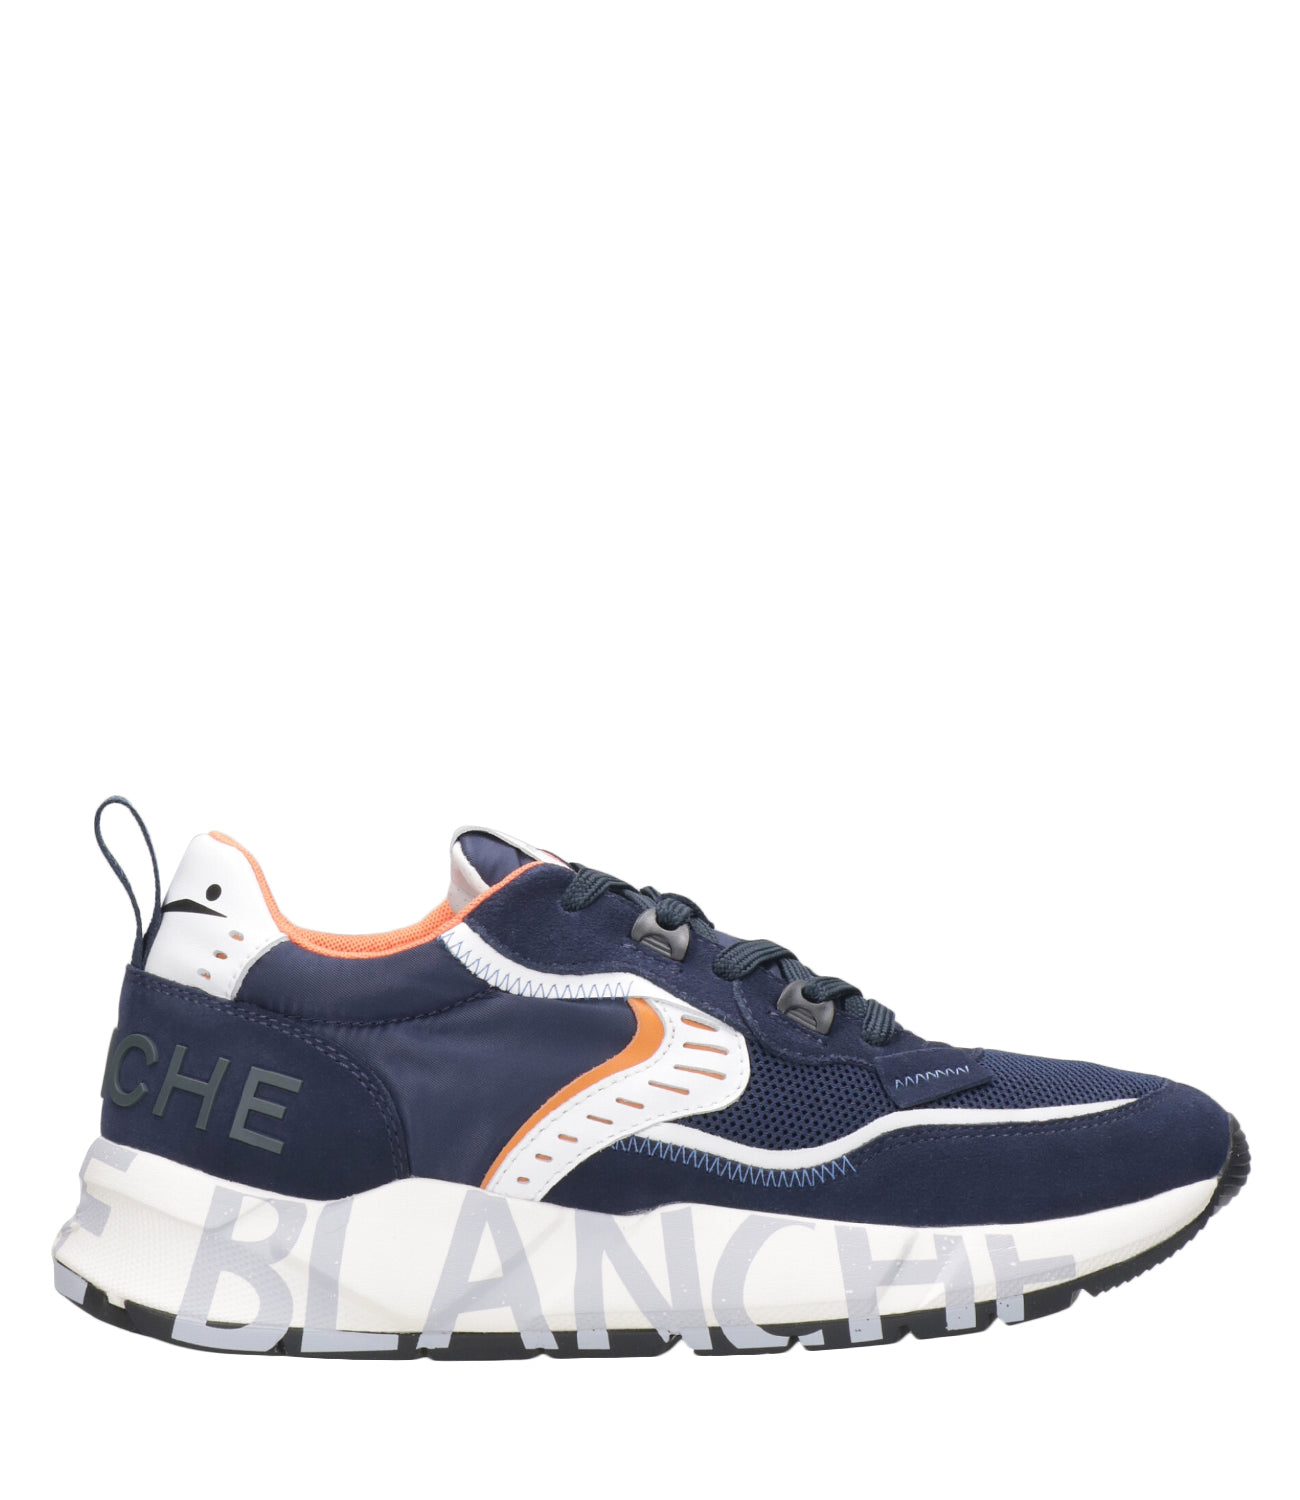 Voile Blanche | Sneakers Club01 Blu Navy e Arancione